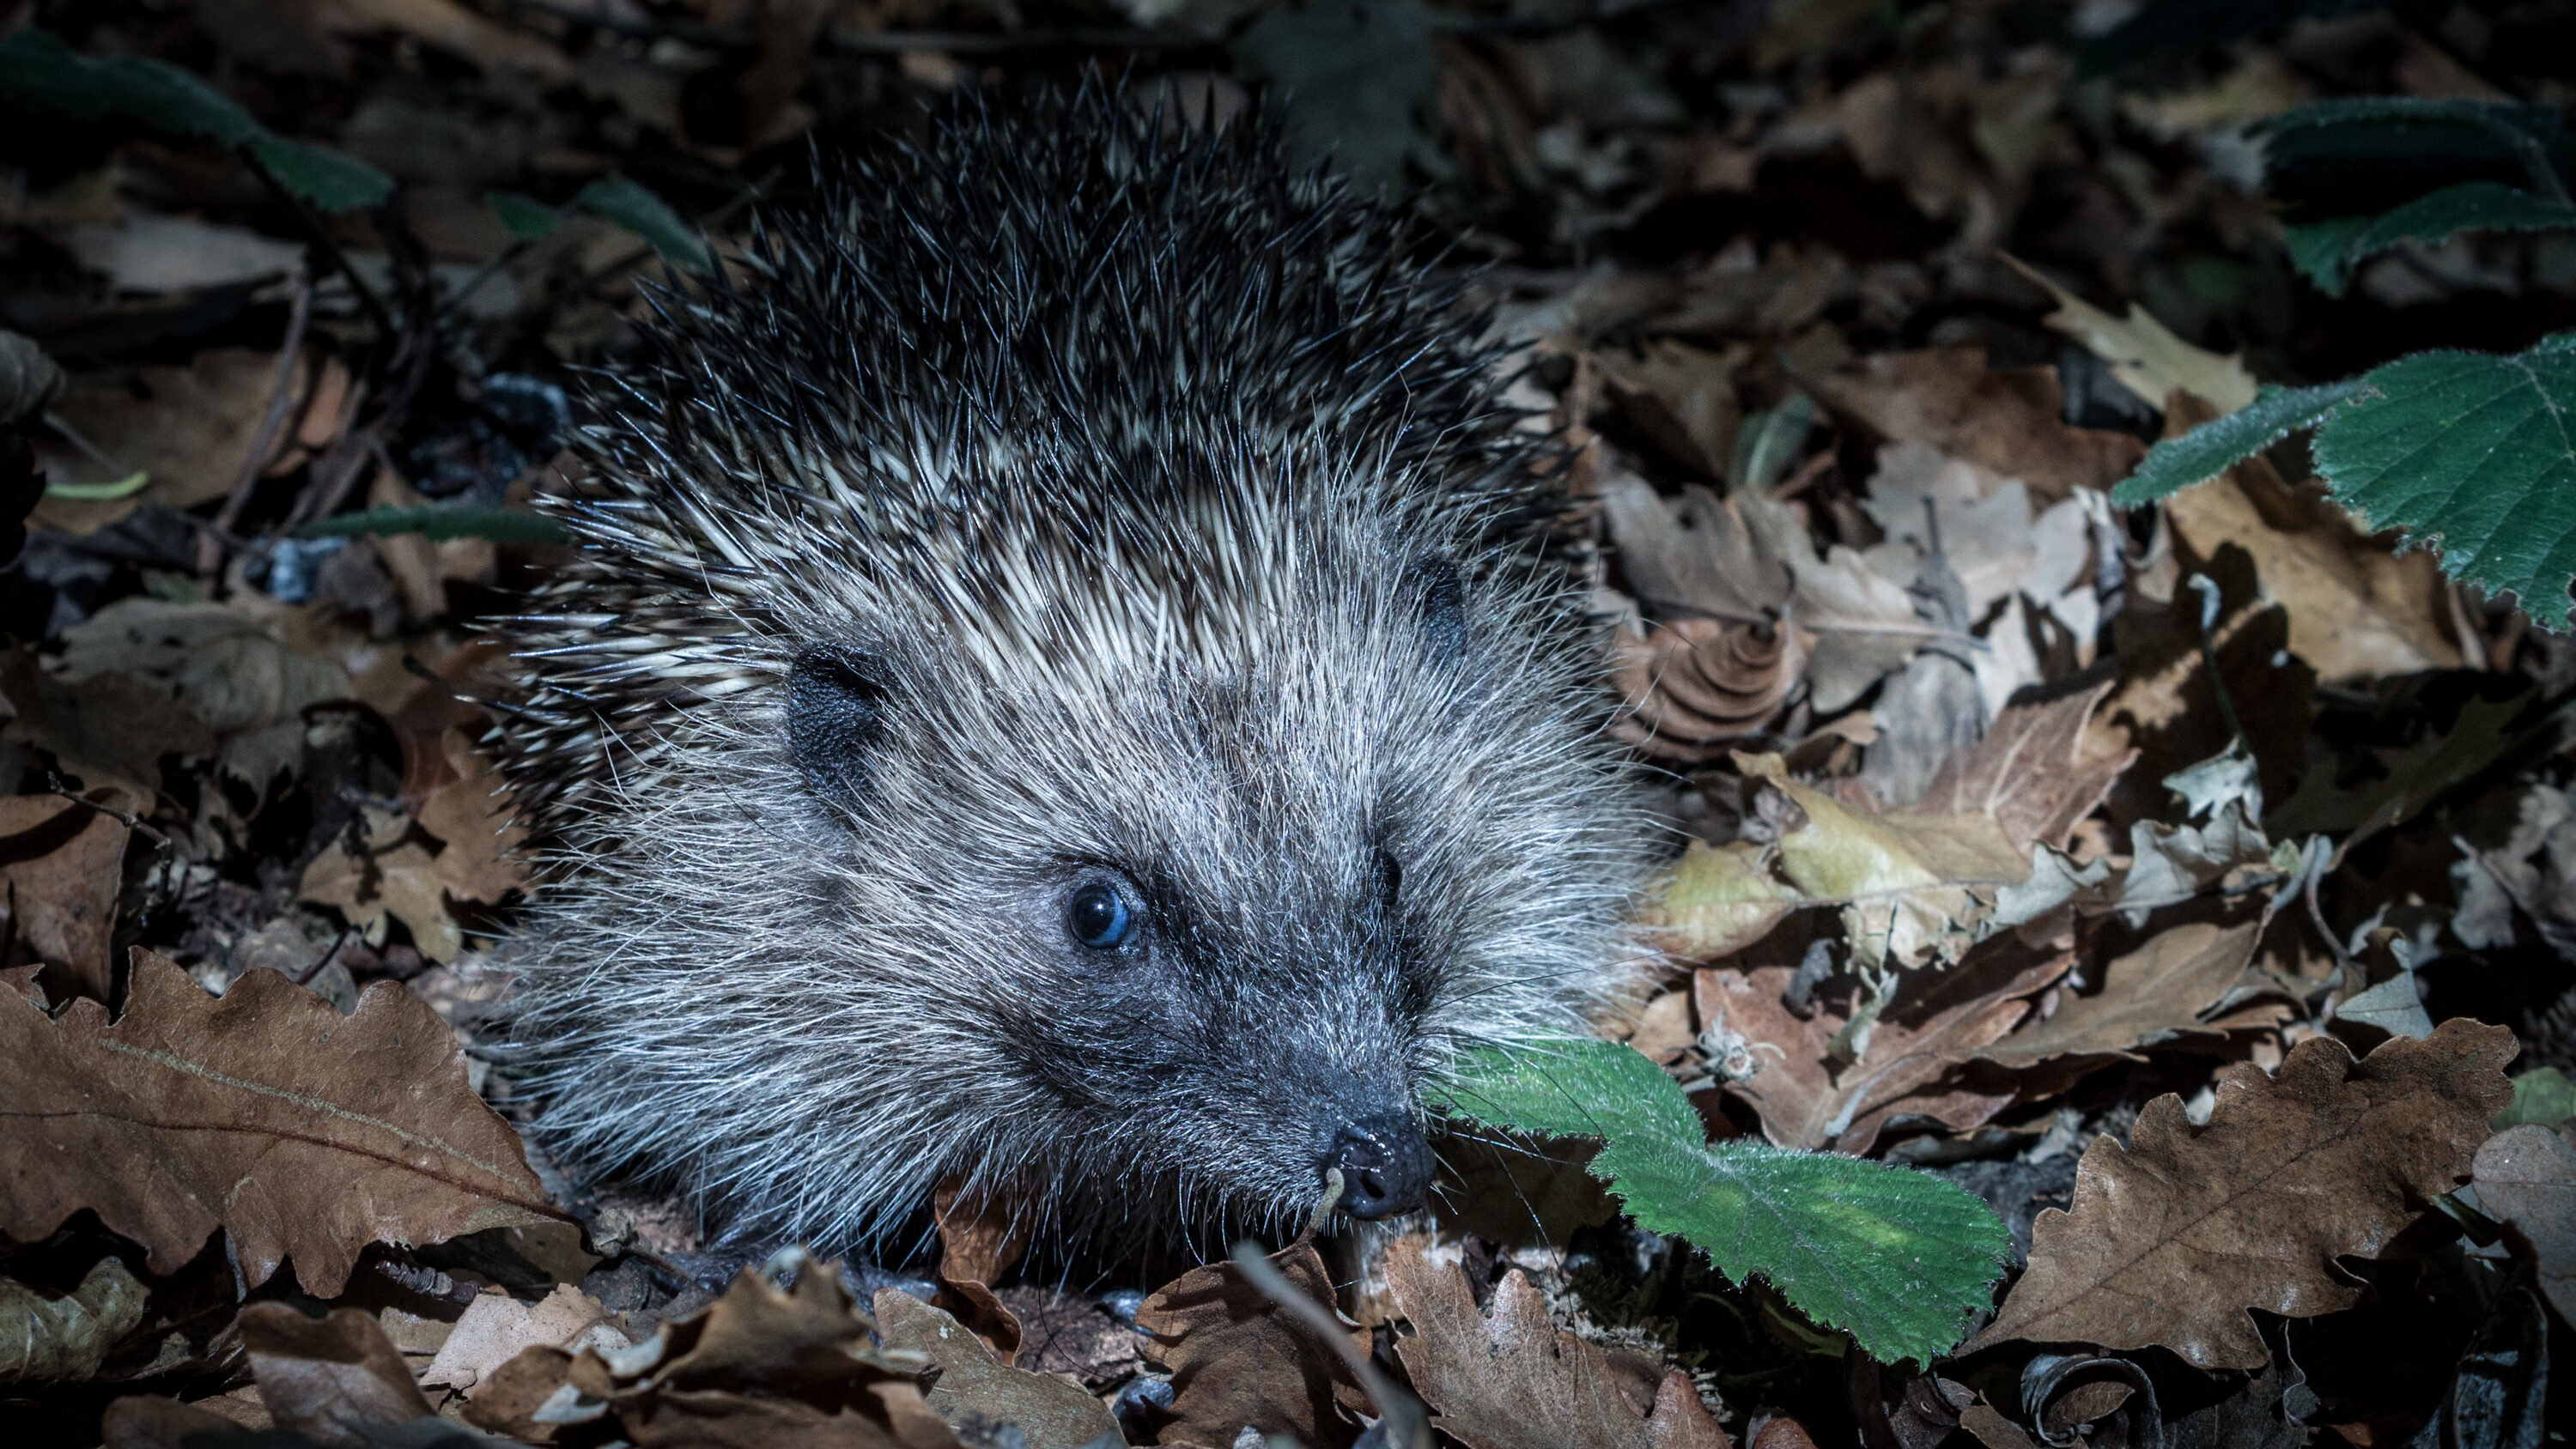 Hedgehog in leaf litter at night